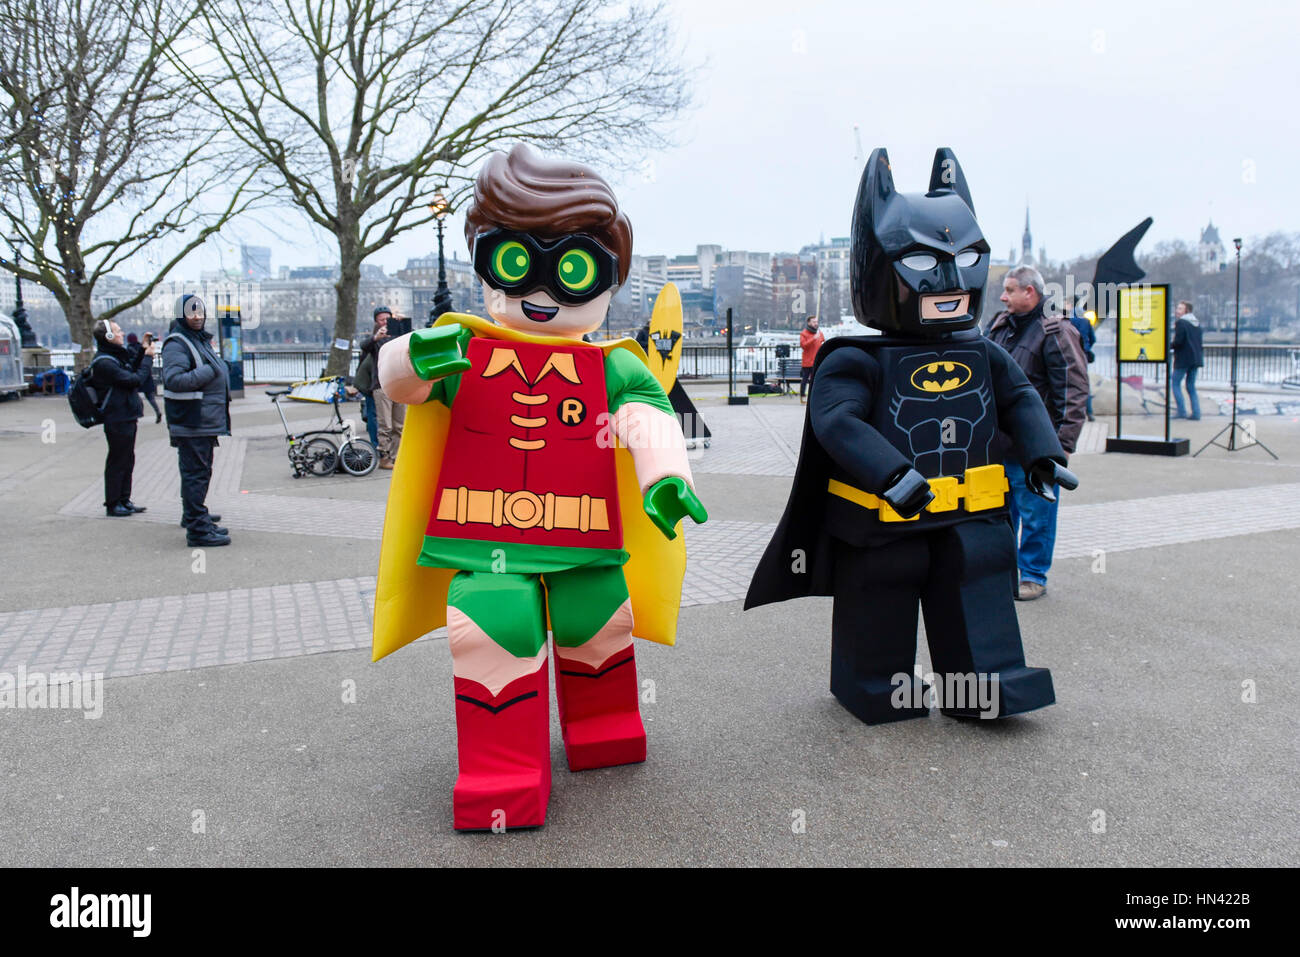 Londra, Regno Unito. 8 febbraio, 2017. LEGO Batman e Robin personaggi in  costume dopo la posa con un gigante di LEGO Batarang, crash ha atterrato al  punto di osservazione sulla banca del